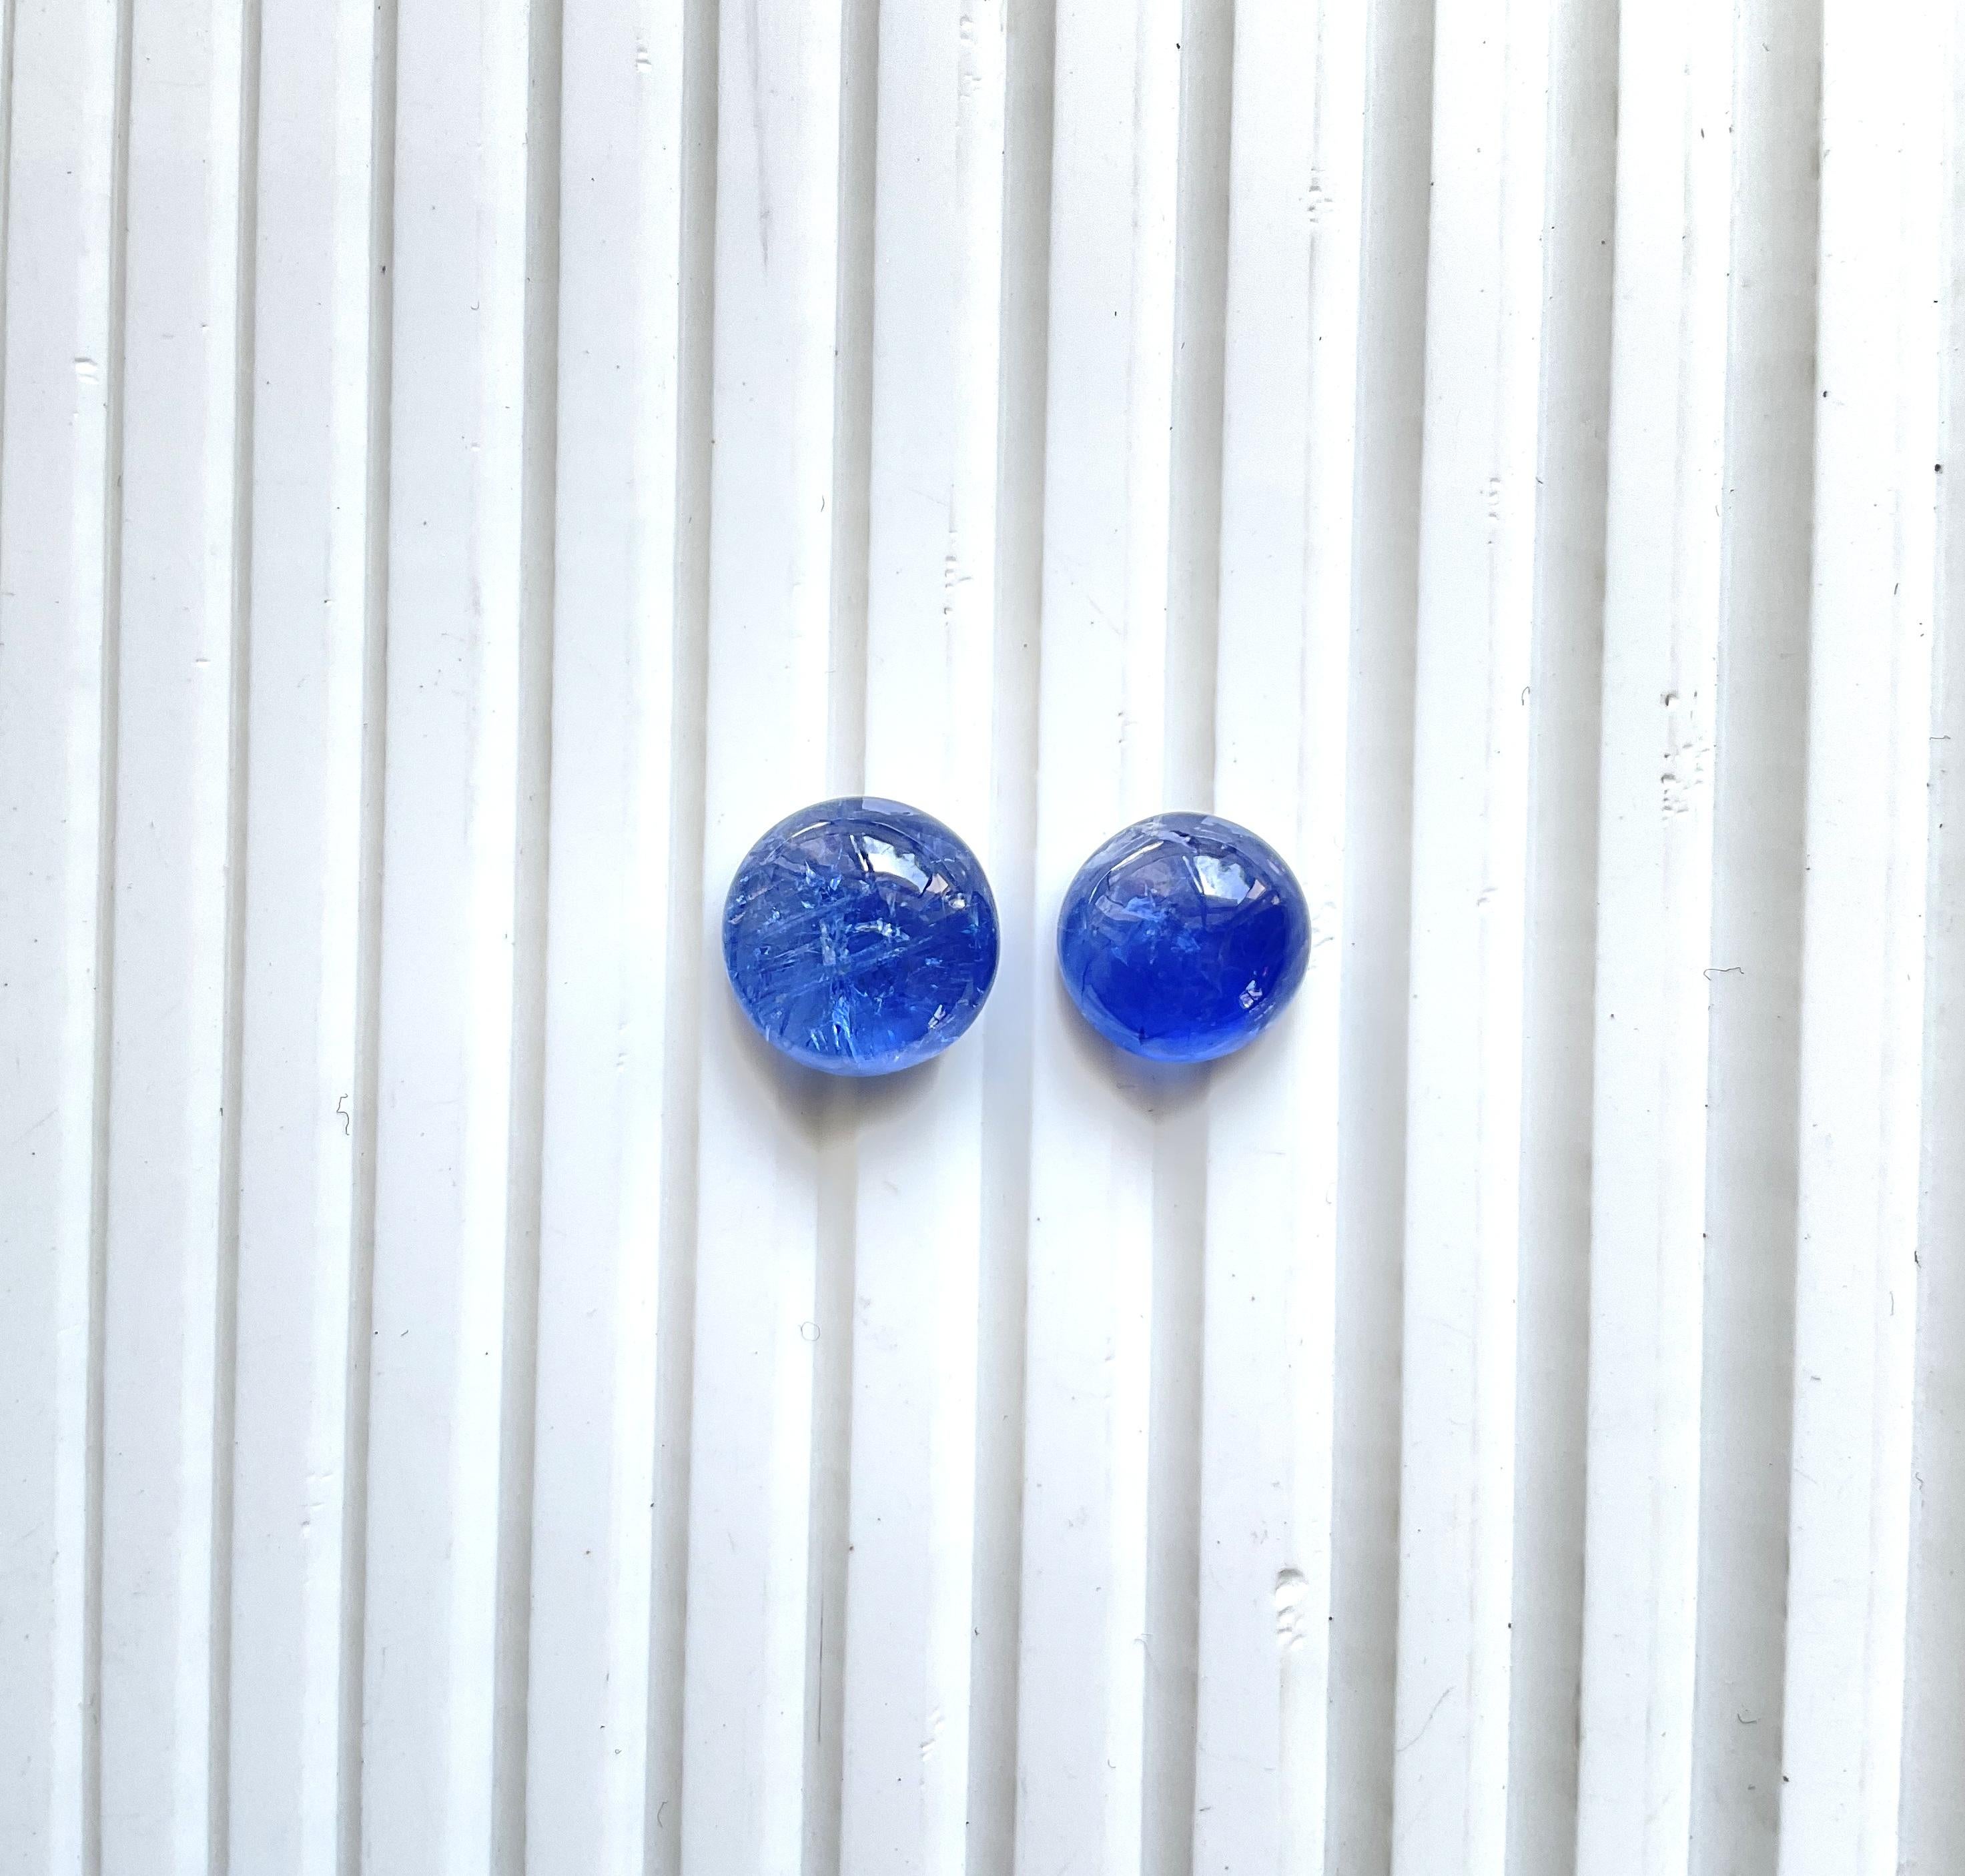 Blauer burmesischer Saphir rund für feinen Schmuck

Edelstein: Blauer Saphir No Heat
Art : Birmanisch
Form: Cabochon 
Karat Gewicht: 16,41
Größe - 10 bis 12